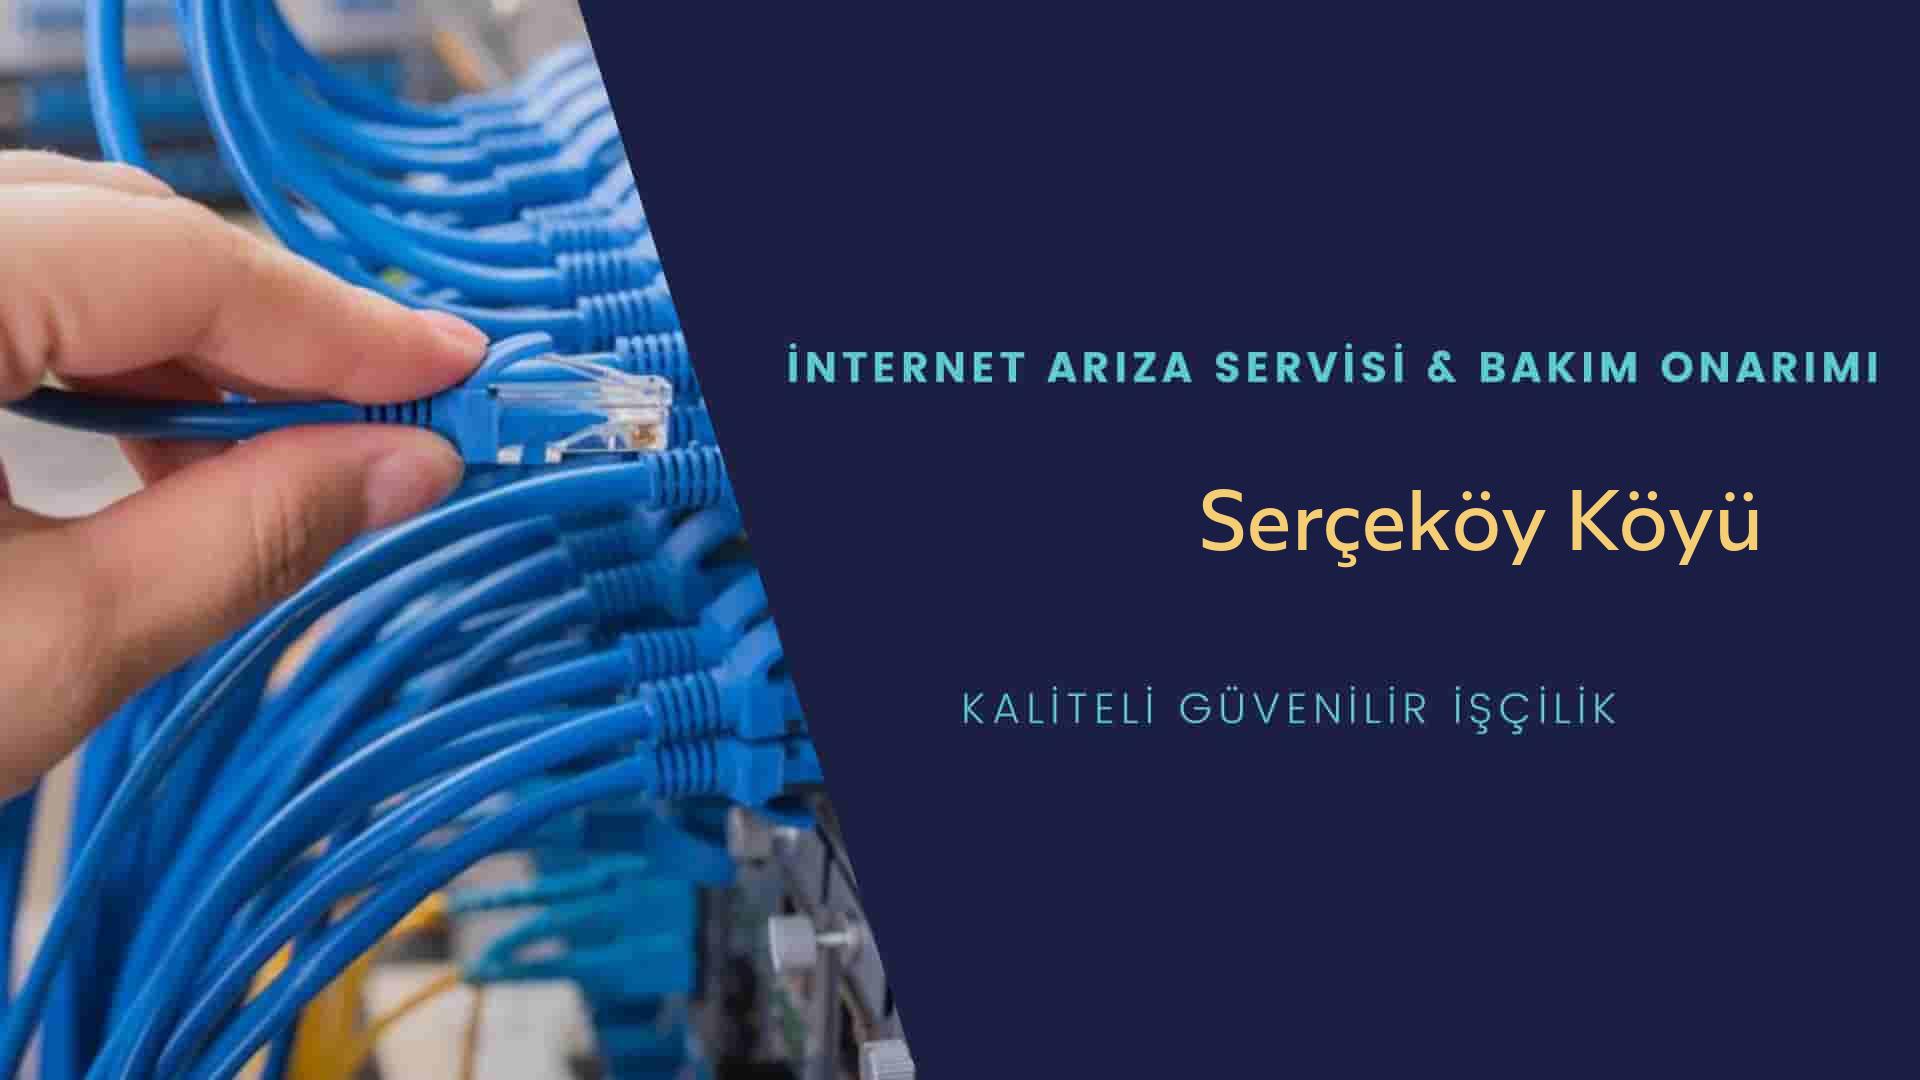 Serçeköy Köyü internet kablosu çekimi yapan yerler veya elektrikçiler mi? arıyorsunuz doğru yerdesiniz o zaman sizlere 7/24 yardımcı olacak profesyonel ustalarımız bir telefon kadar yakındır size.